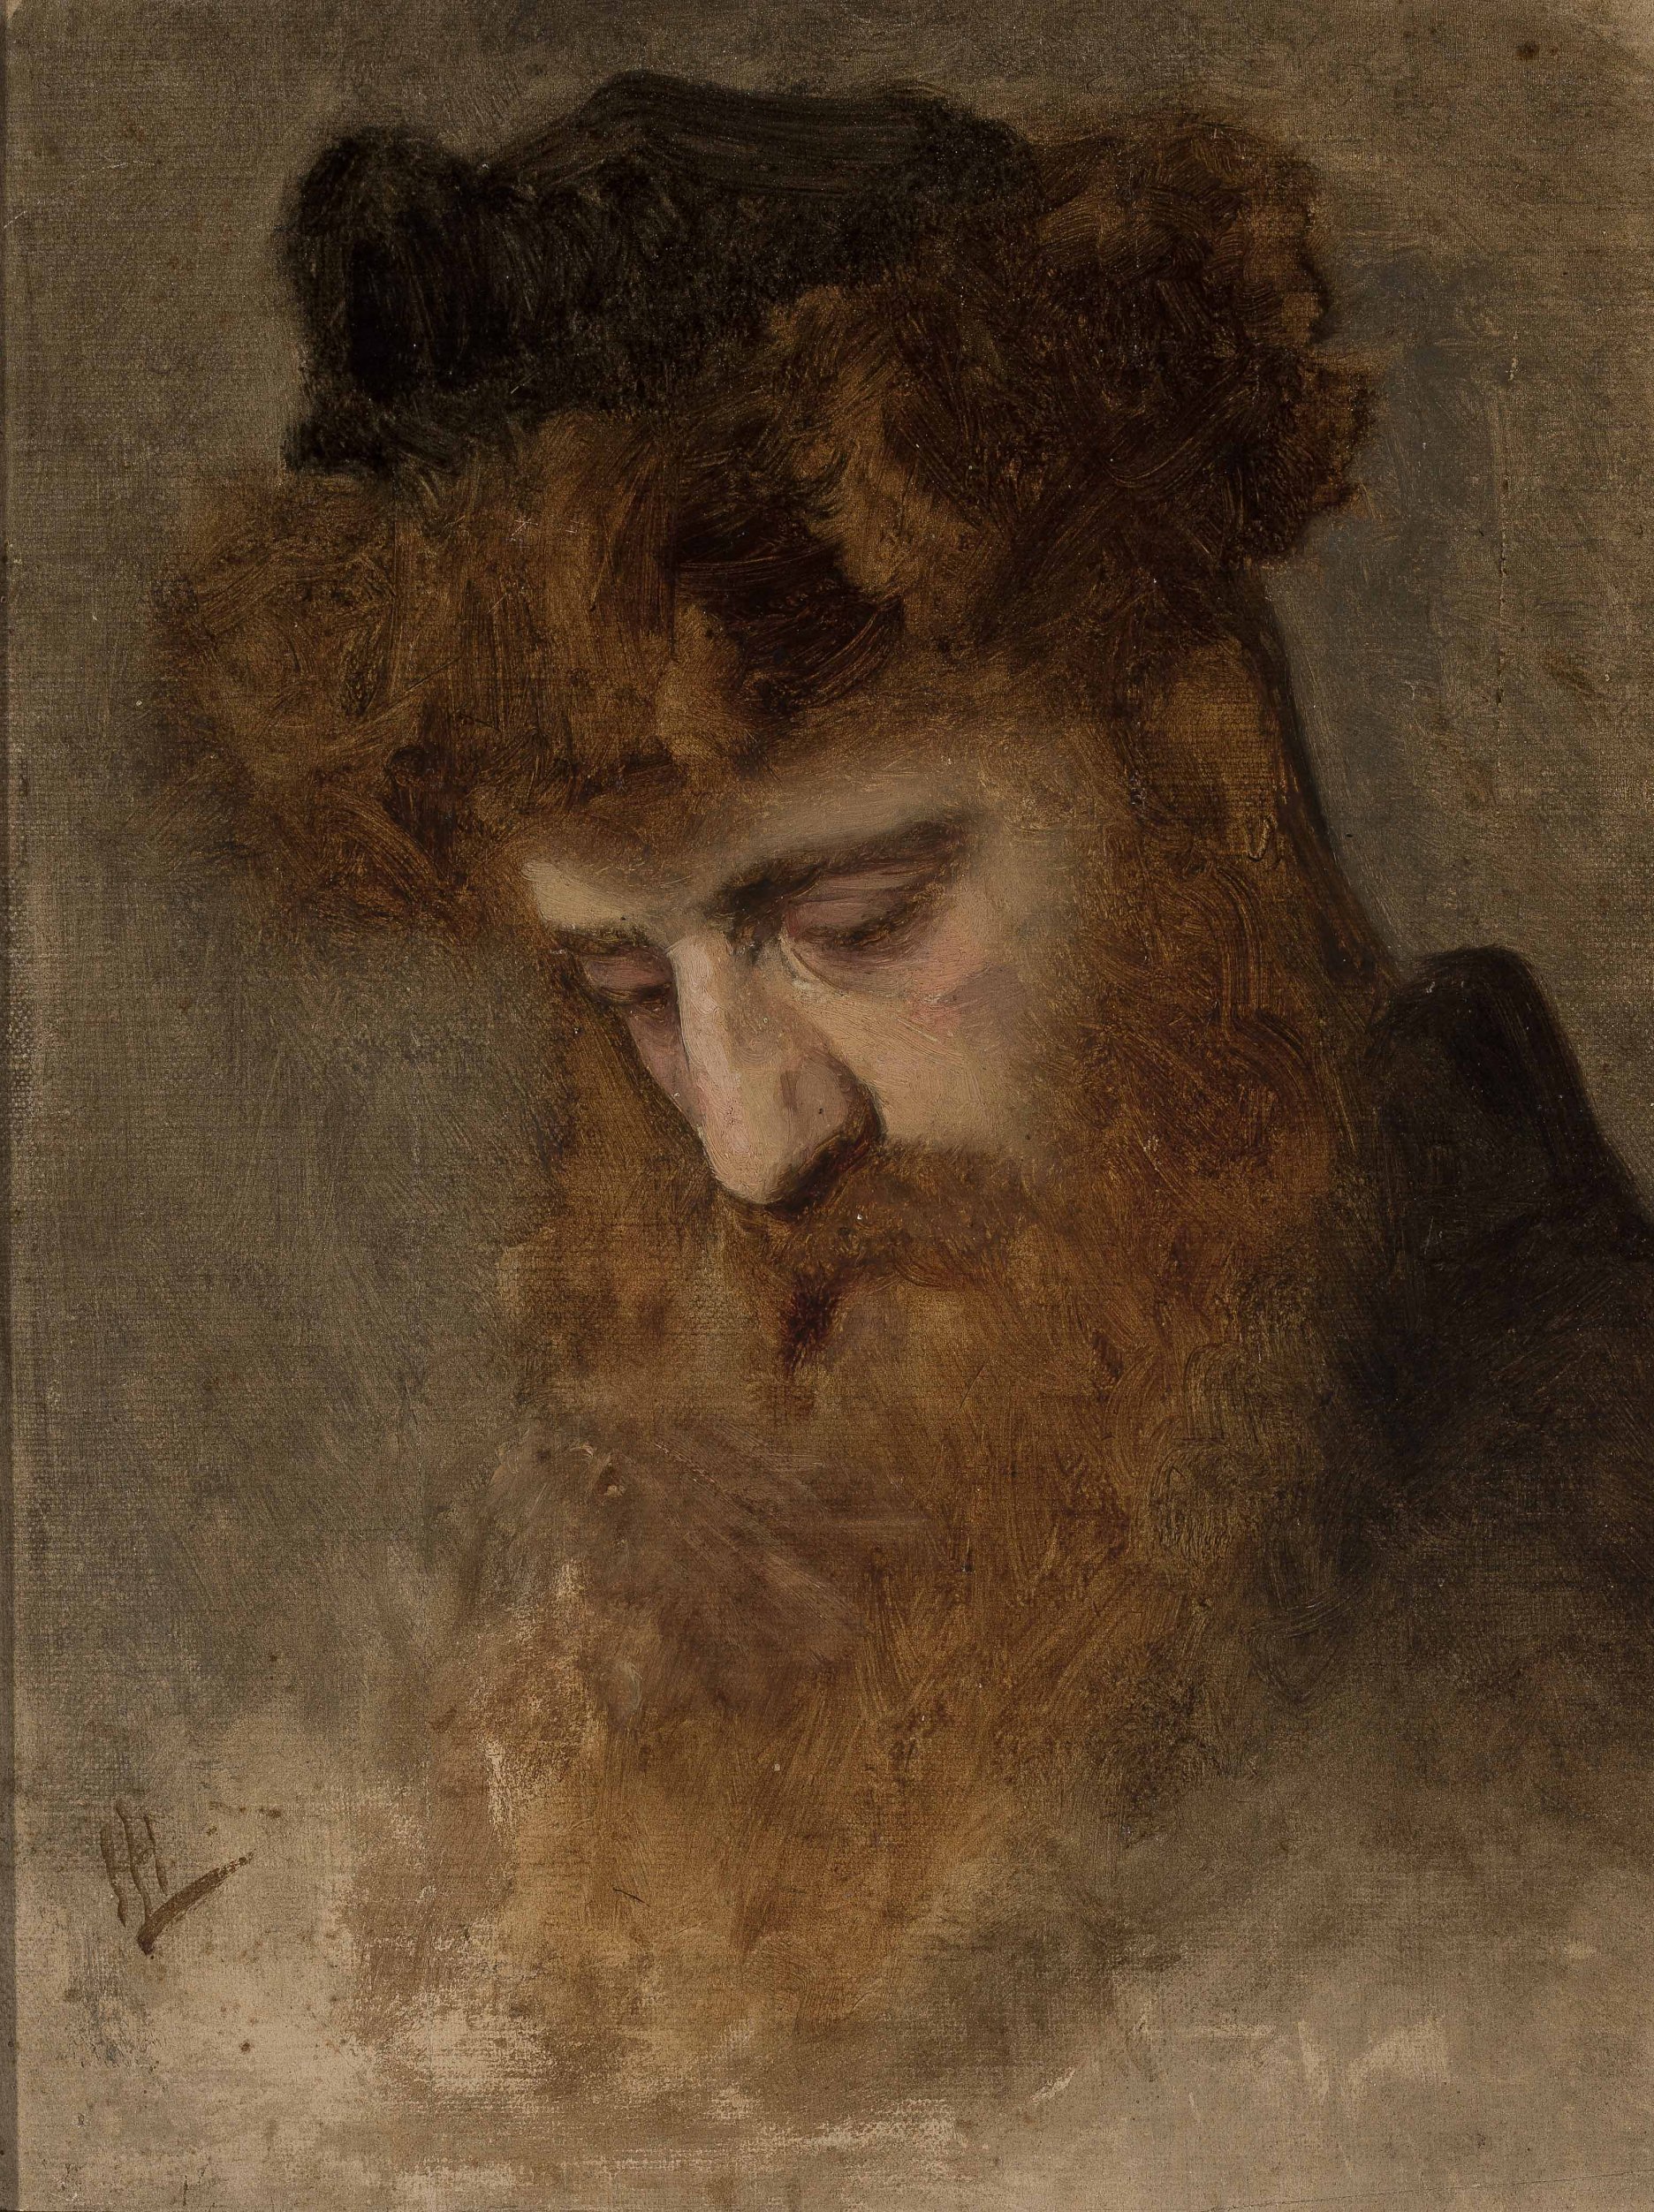 Leopold Horovitz: Portrétna štúdia muža so štrajmlom. 1870 – 1880. Olej, dubová doska. Národné múzeum, Varšava